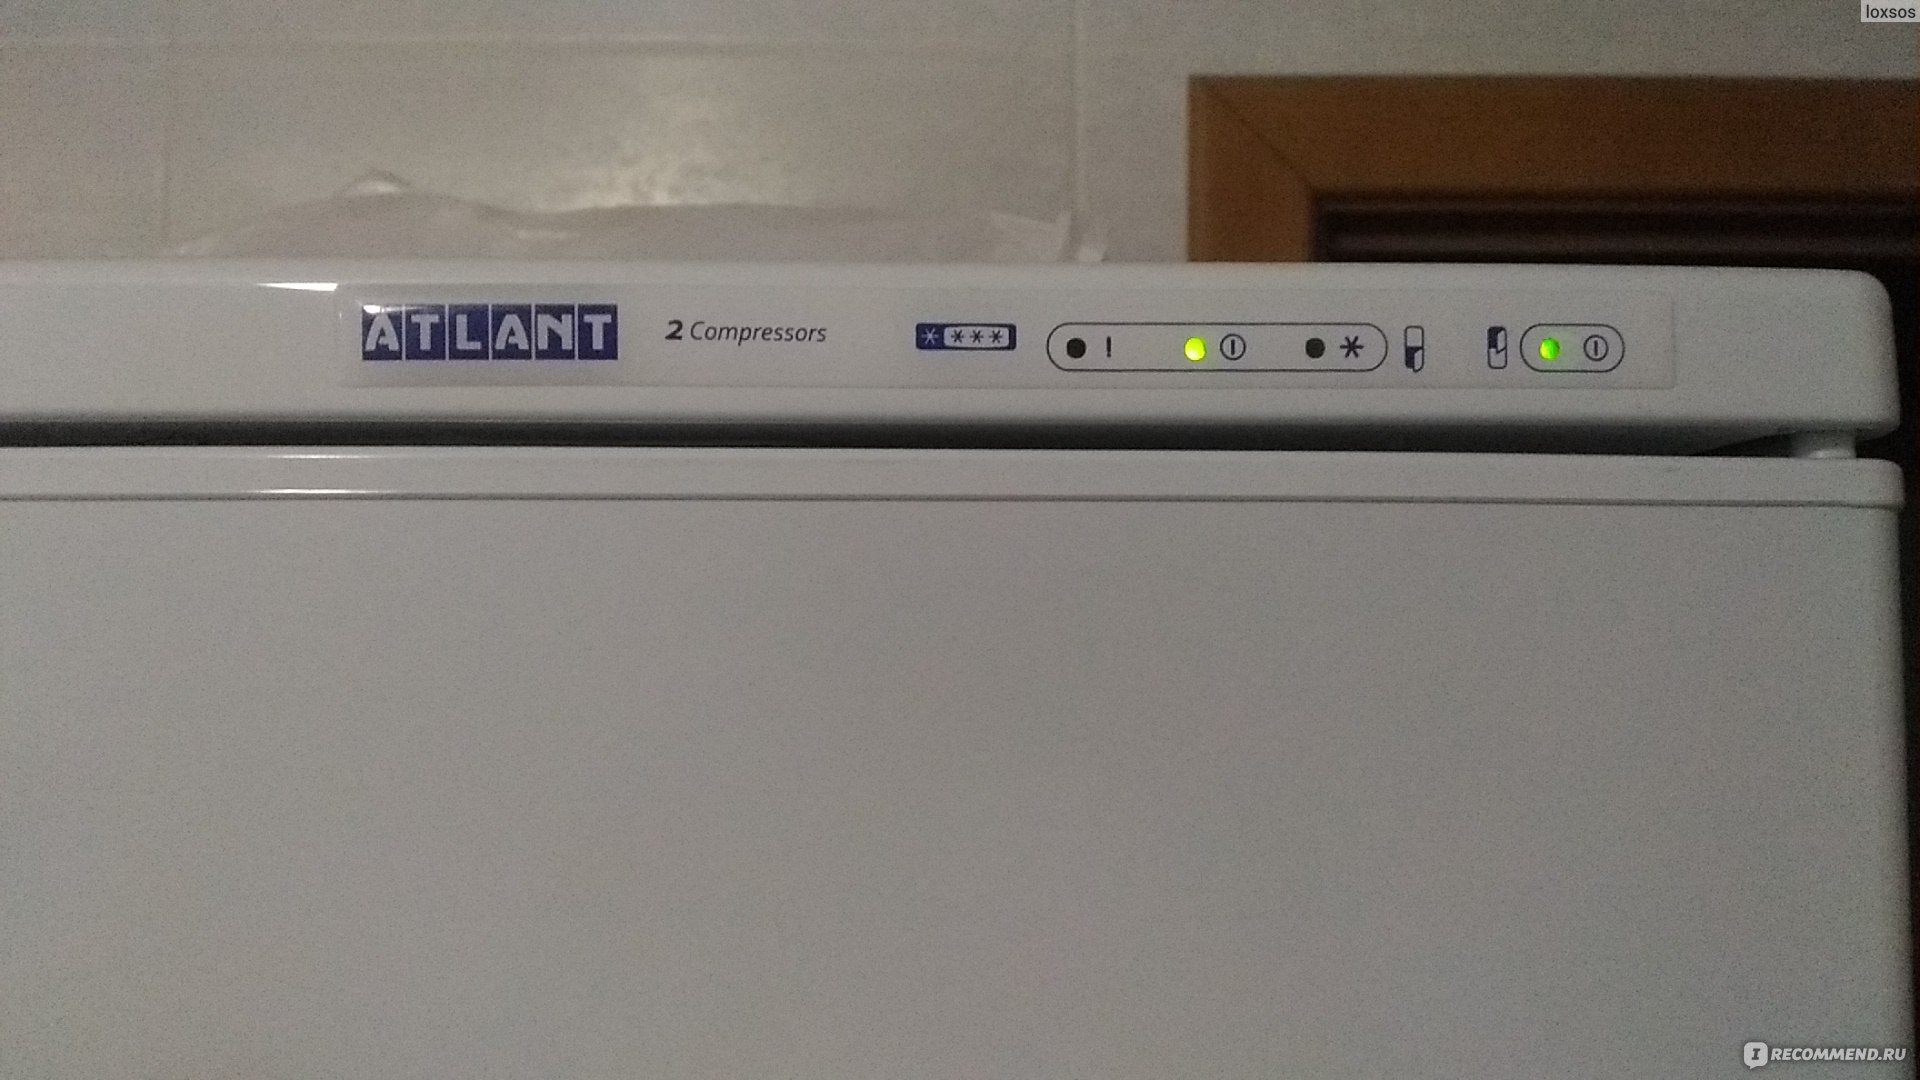 Холодильник атлант двухкамерный лампочка внимание. Холодильник Атлант индикаторы. Холодильник Атлант двухкамерный 4410 индикаторы. Индикаторы на холодильнике Атлант двухкамерный. Холодильник Атлант двухкамерный 2 компрессора индикаторы.